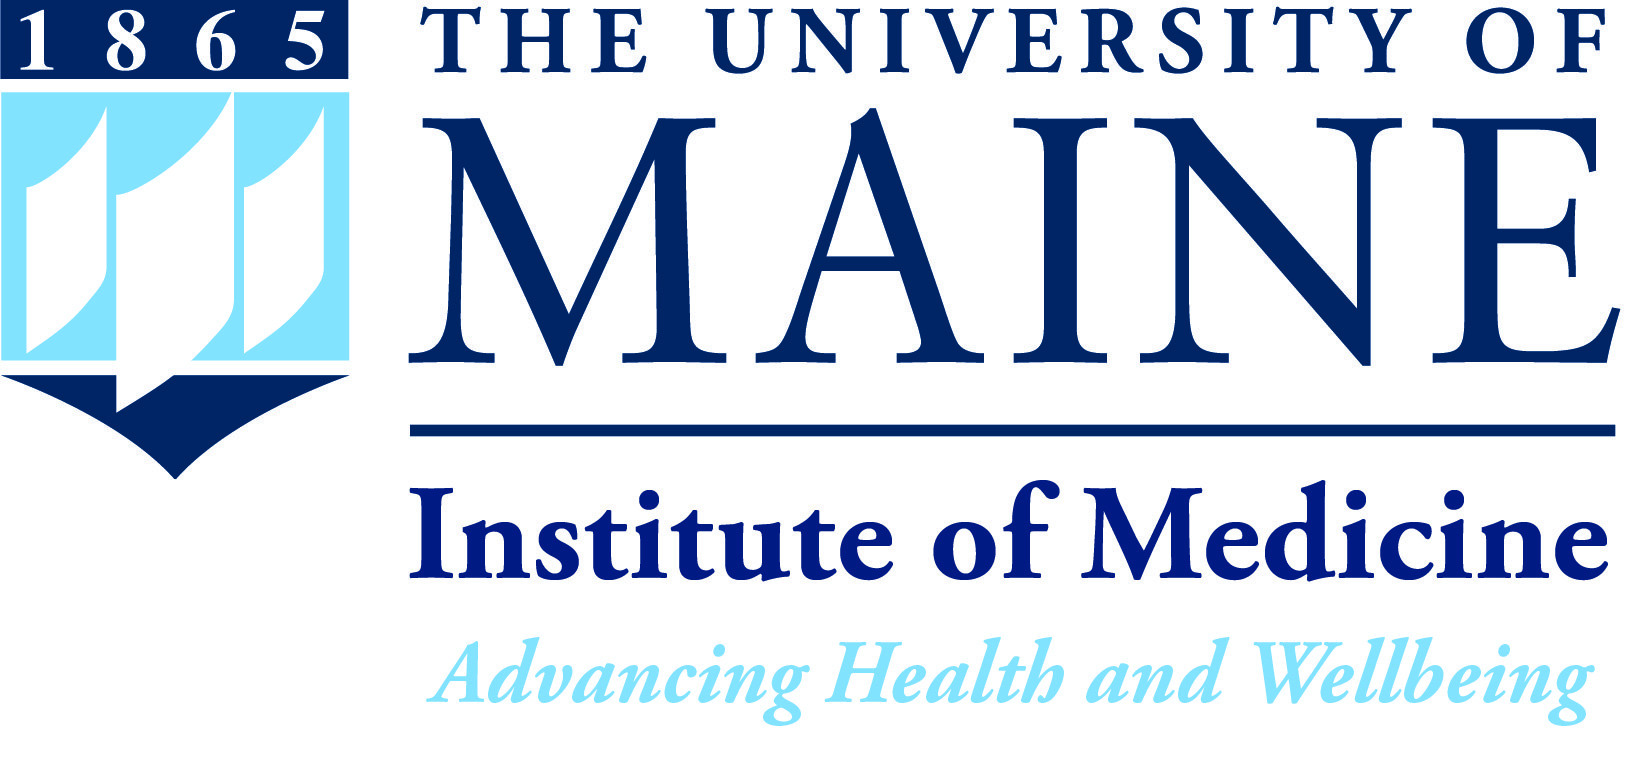 UMaine Institute of Medicine